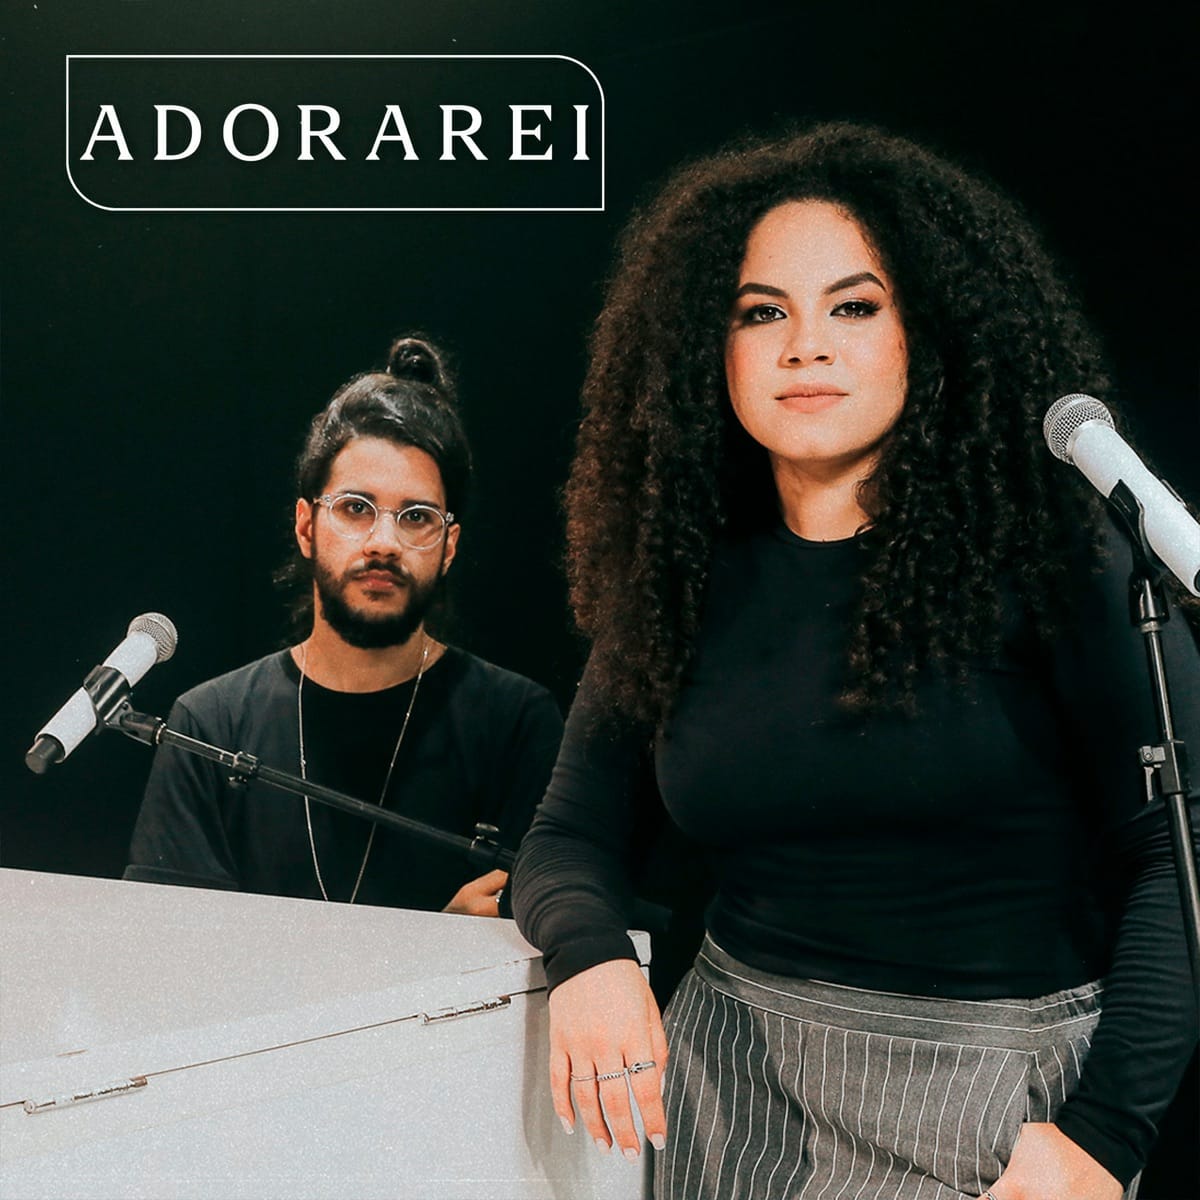 Rebeca Carvalho e Gabriel Guedes, se unem em novo single “Adorarei”